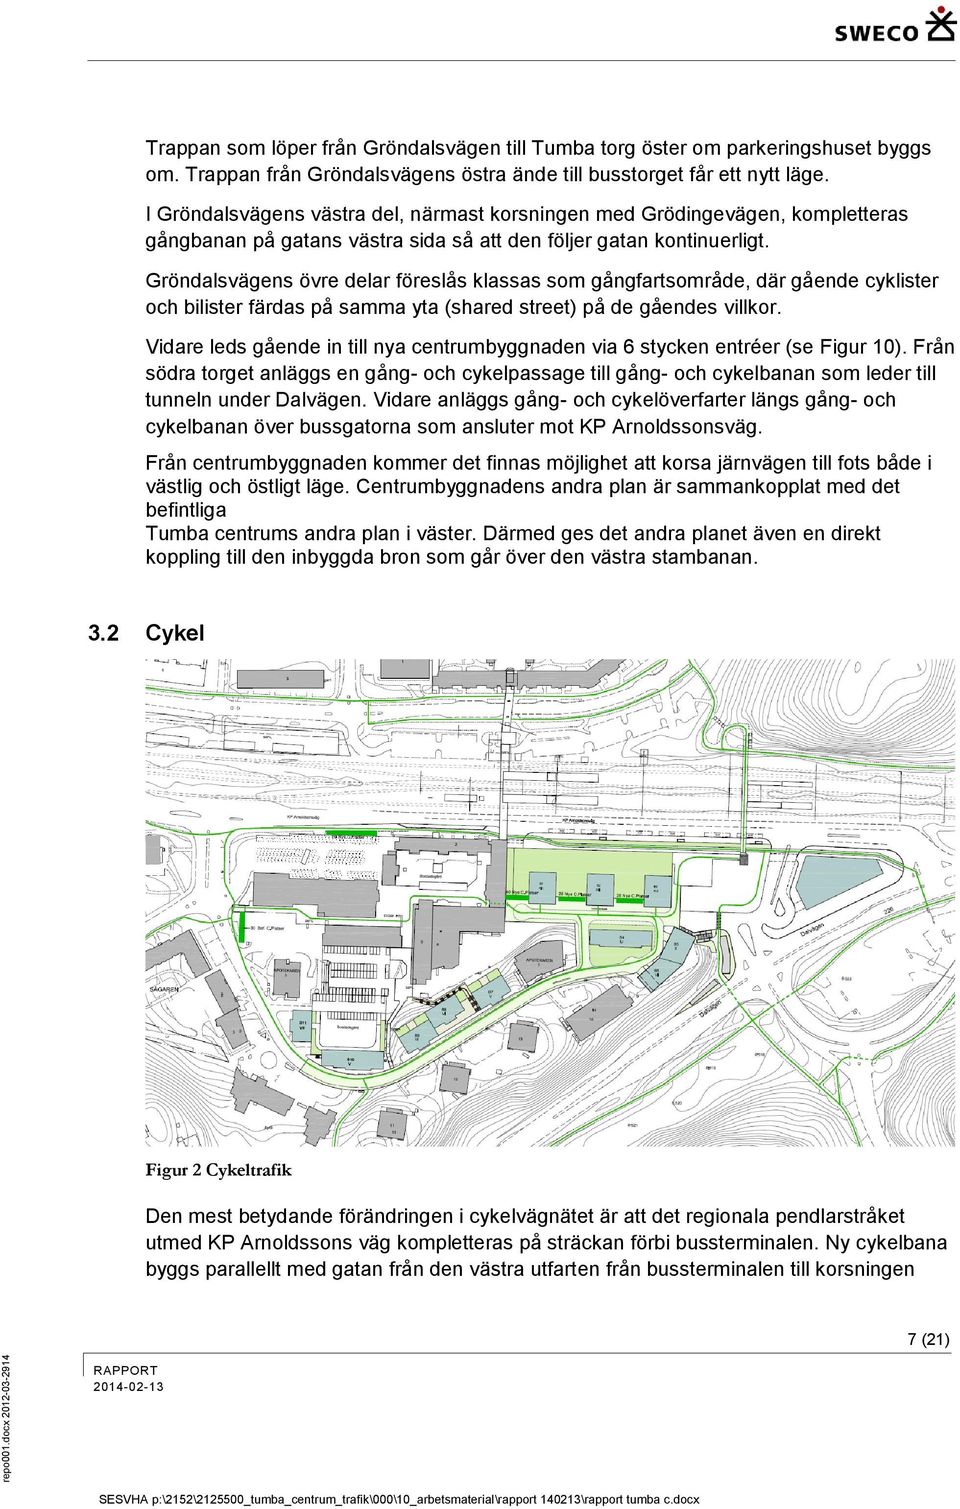 Gröndalsvägens övre delar föreslås klassas som gångfartsområde, där gående cyklister och bilister färdas på samma yta (shared street) på de gåendes villkor.